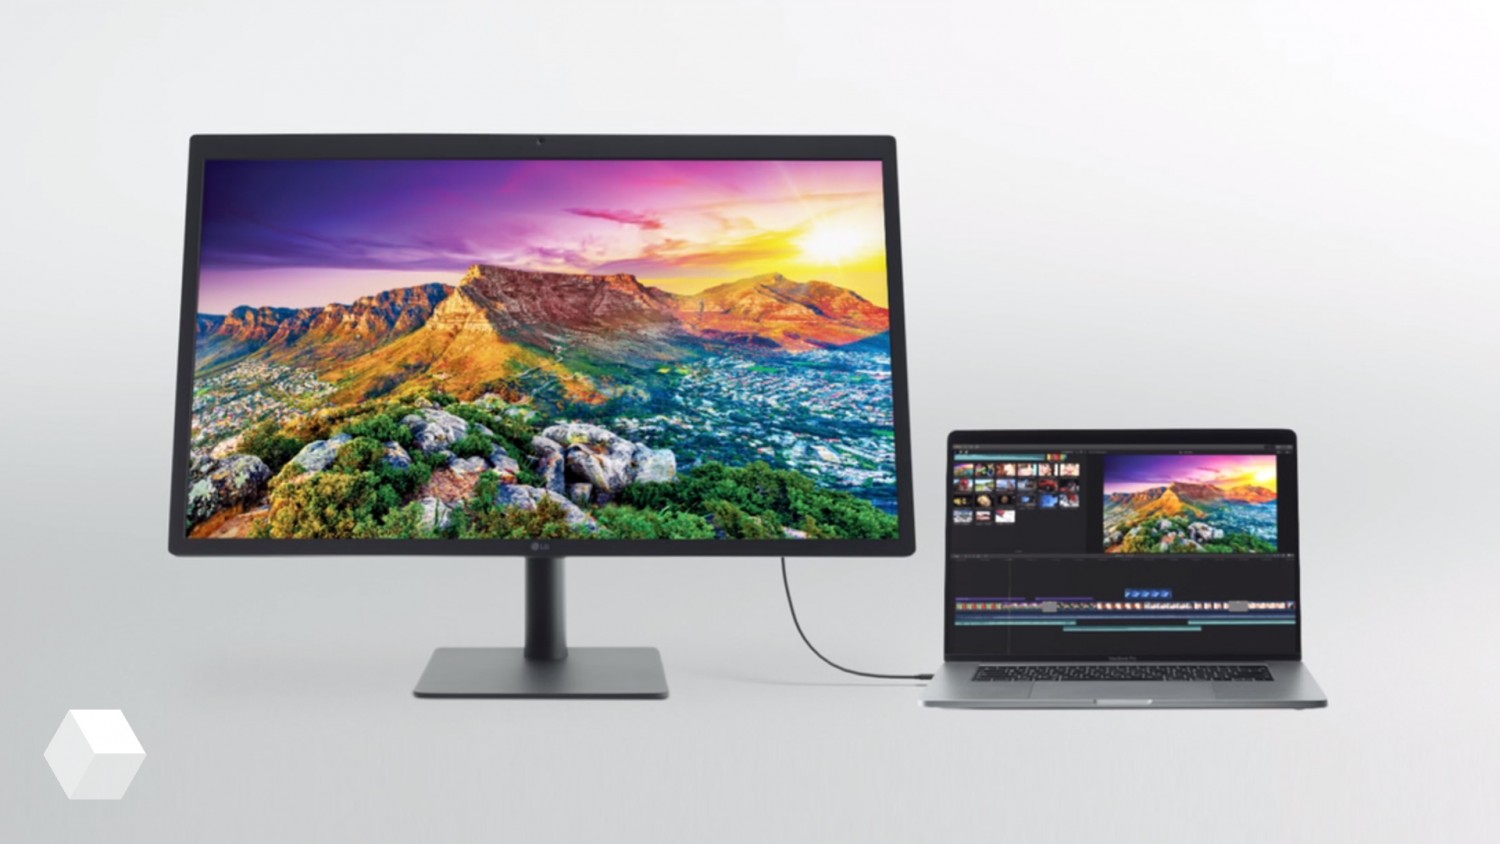 LG представила 27-дюймовый монитор с разрешением 5K для компьютеров Apple